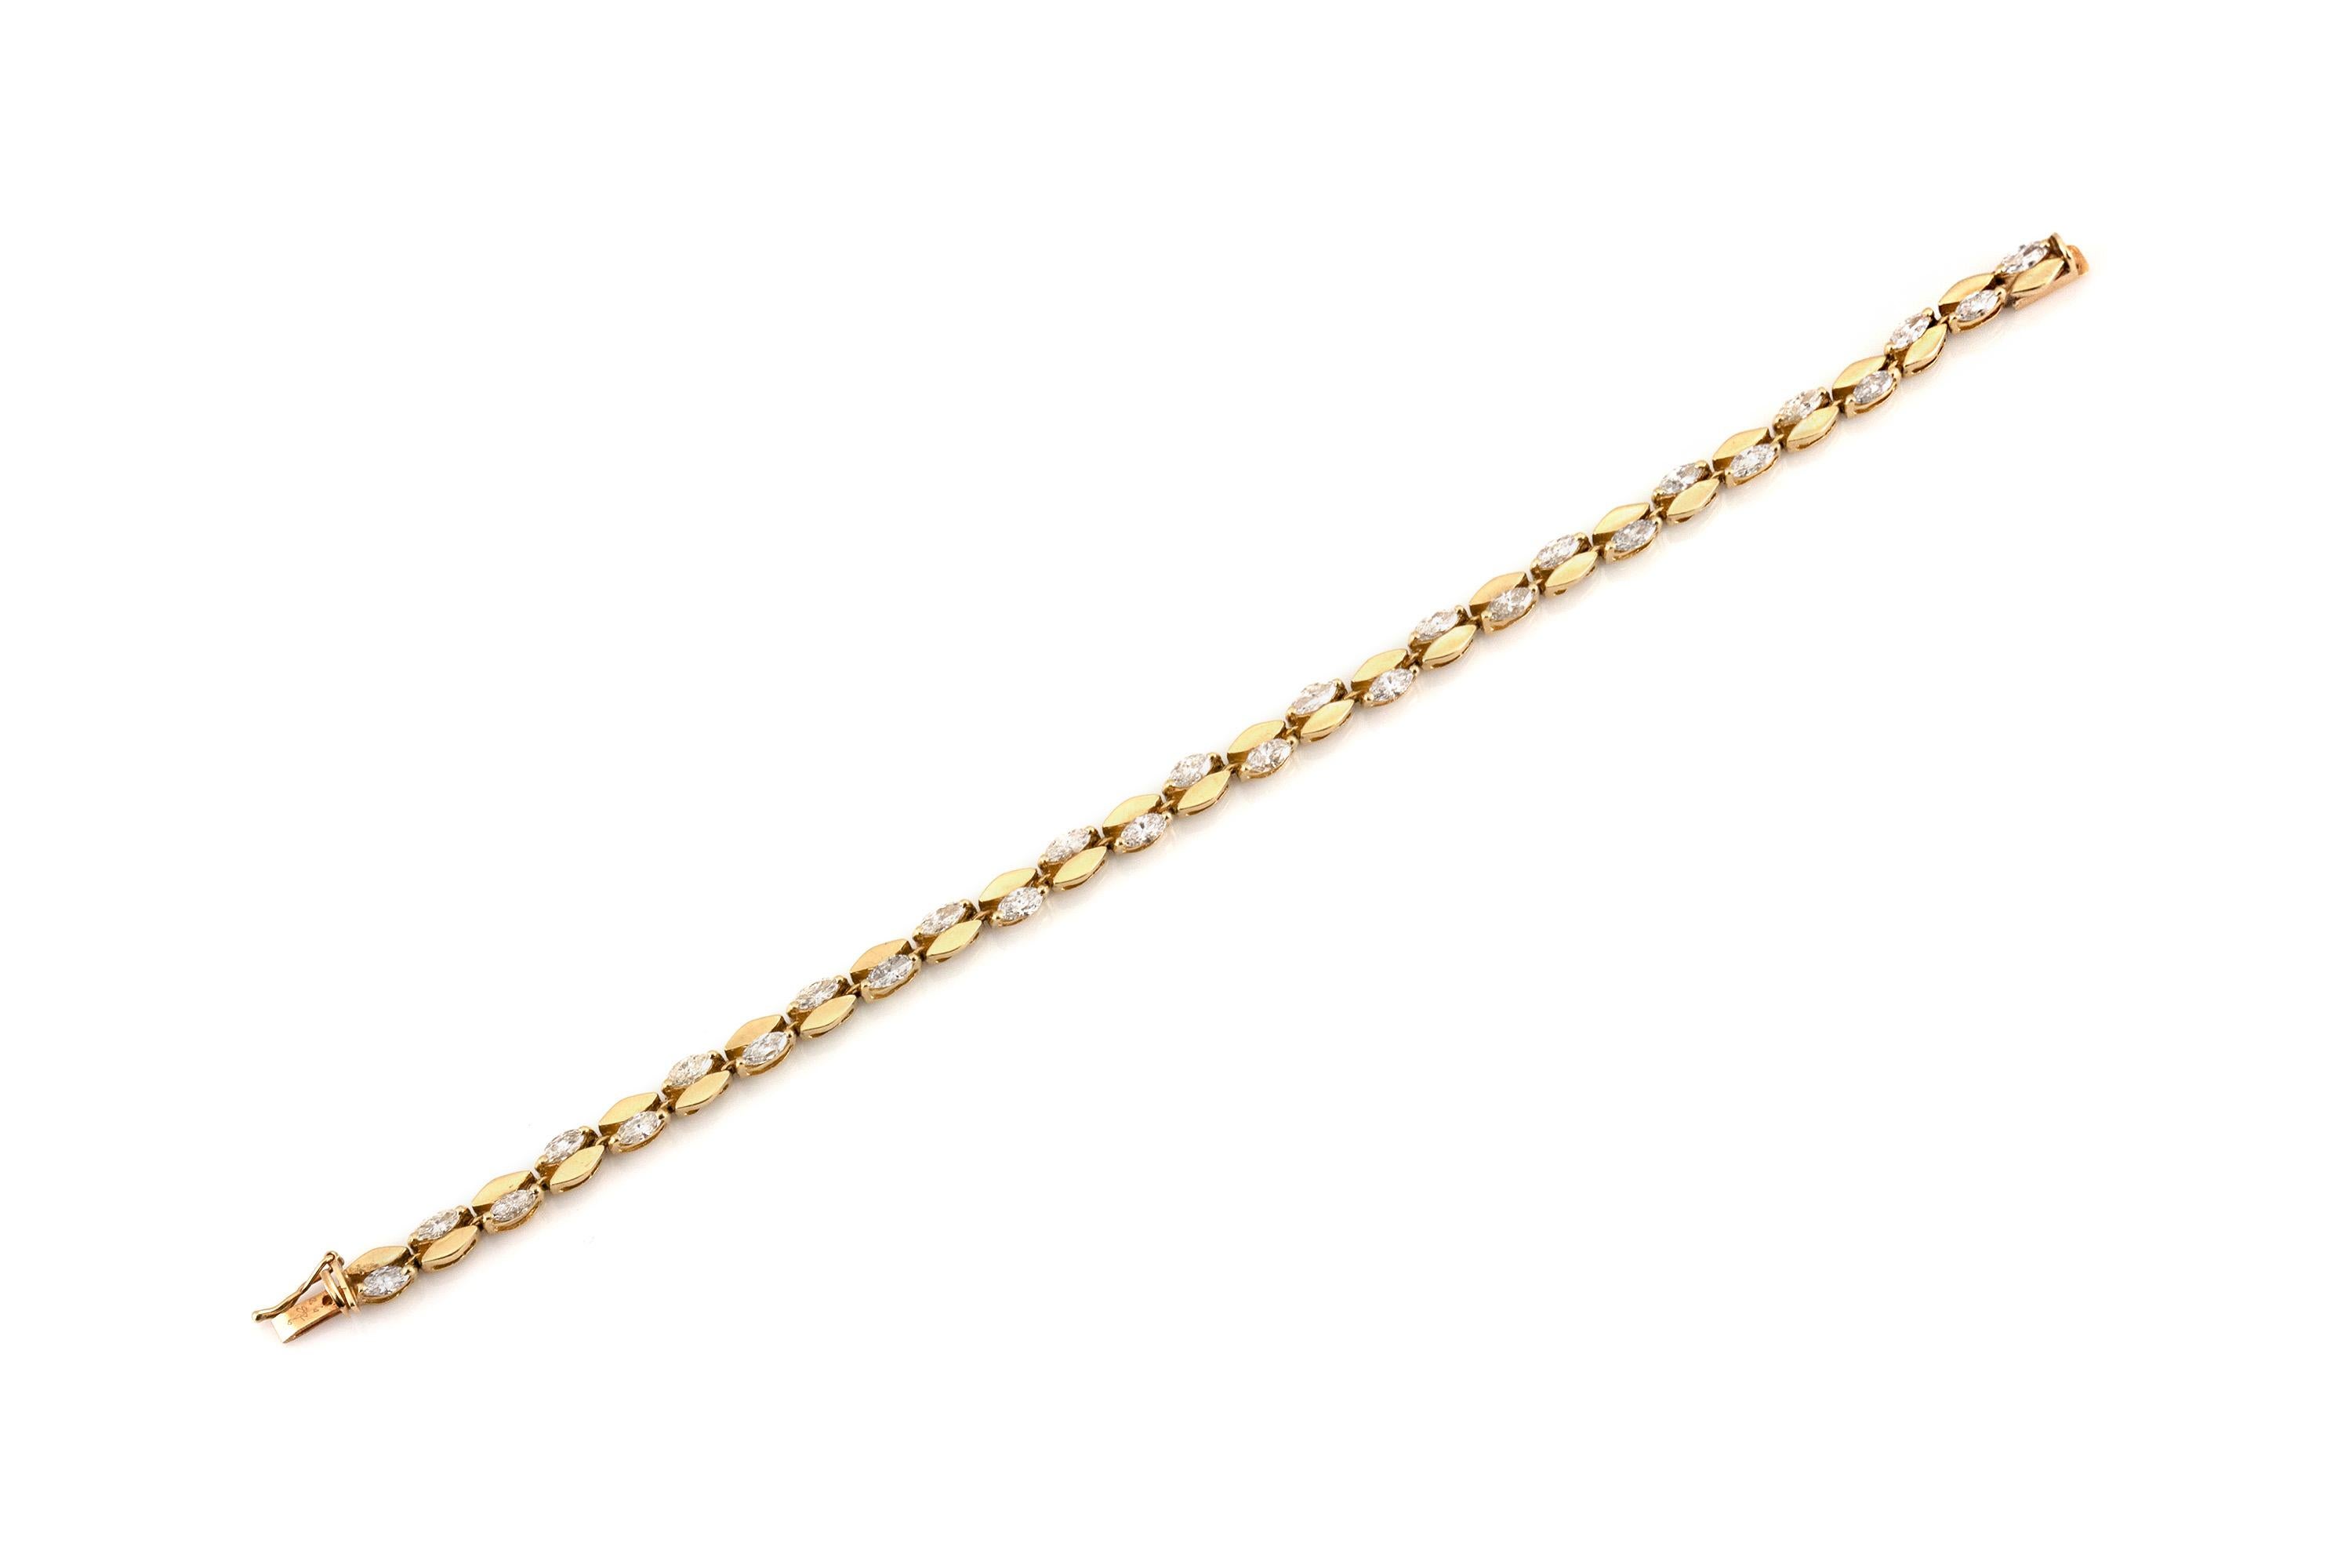 Le bracelet est finement travaillé en or jaune 14k avec des diamants marquises pesant approximativement 4.00 carats au total.
Vers 1980.